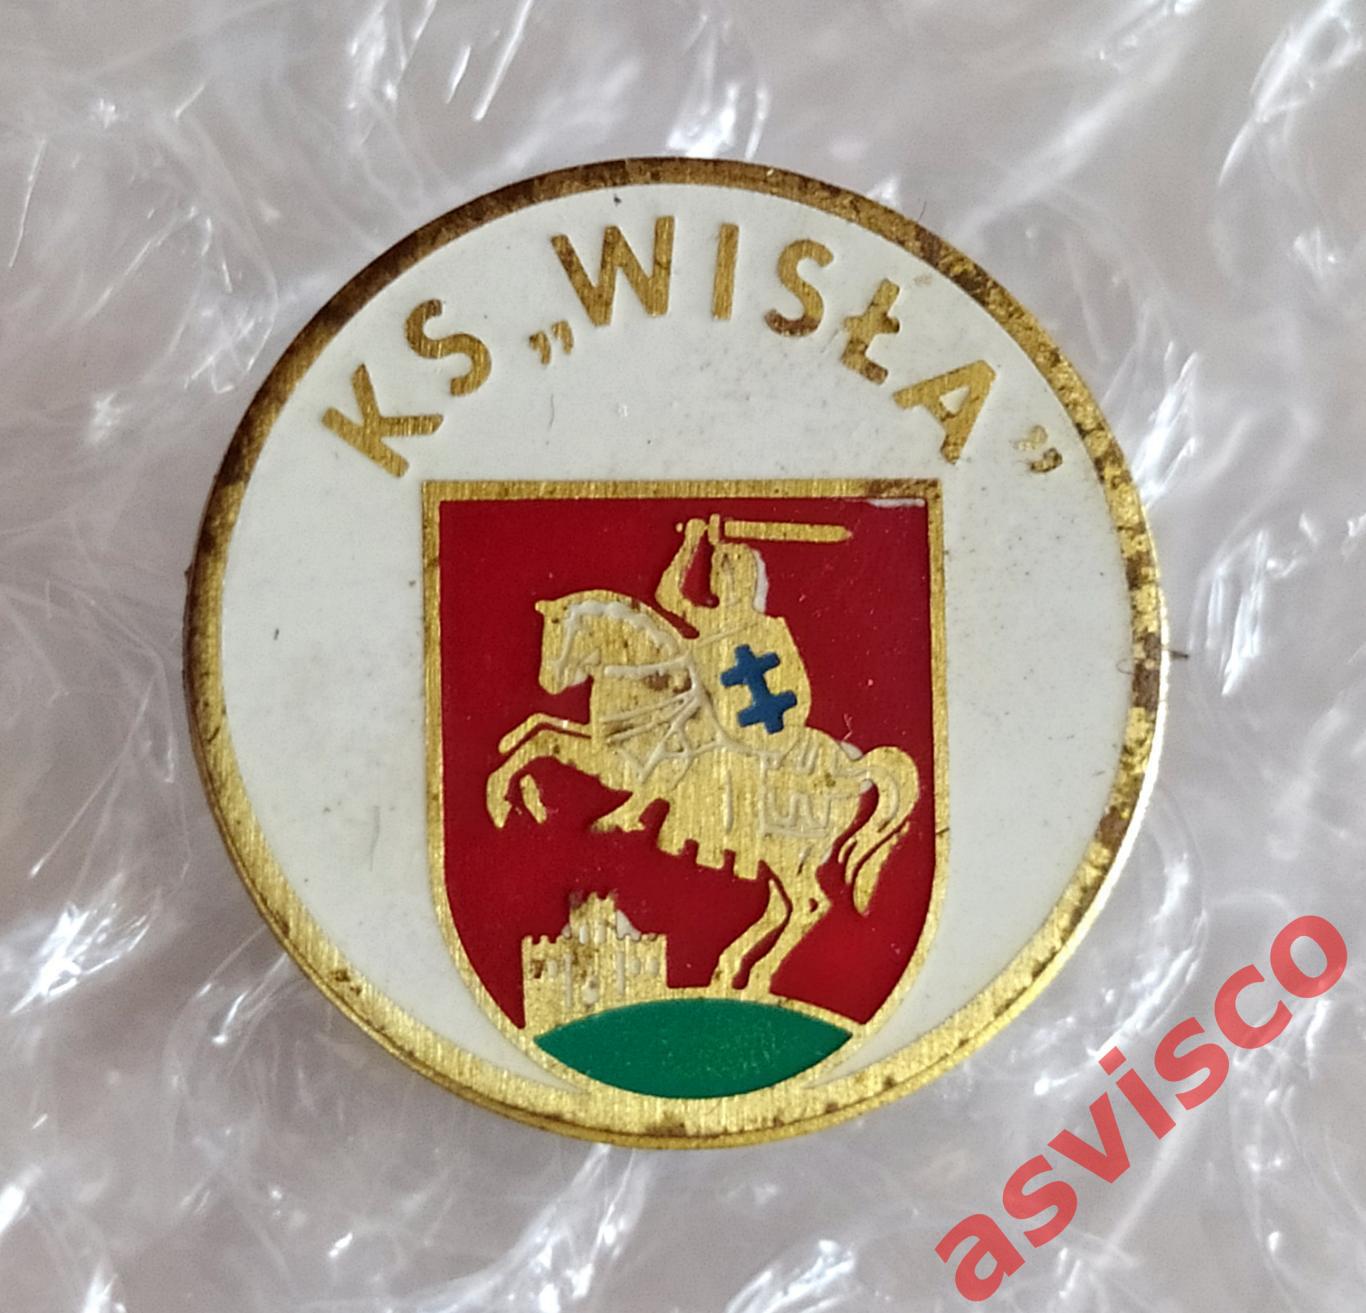 Значок Футбольный клуб KS WISLA PULAWY / СК ВИСЛА из Пулавы / Польша.